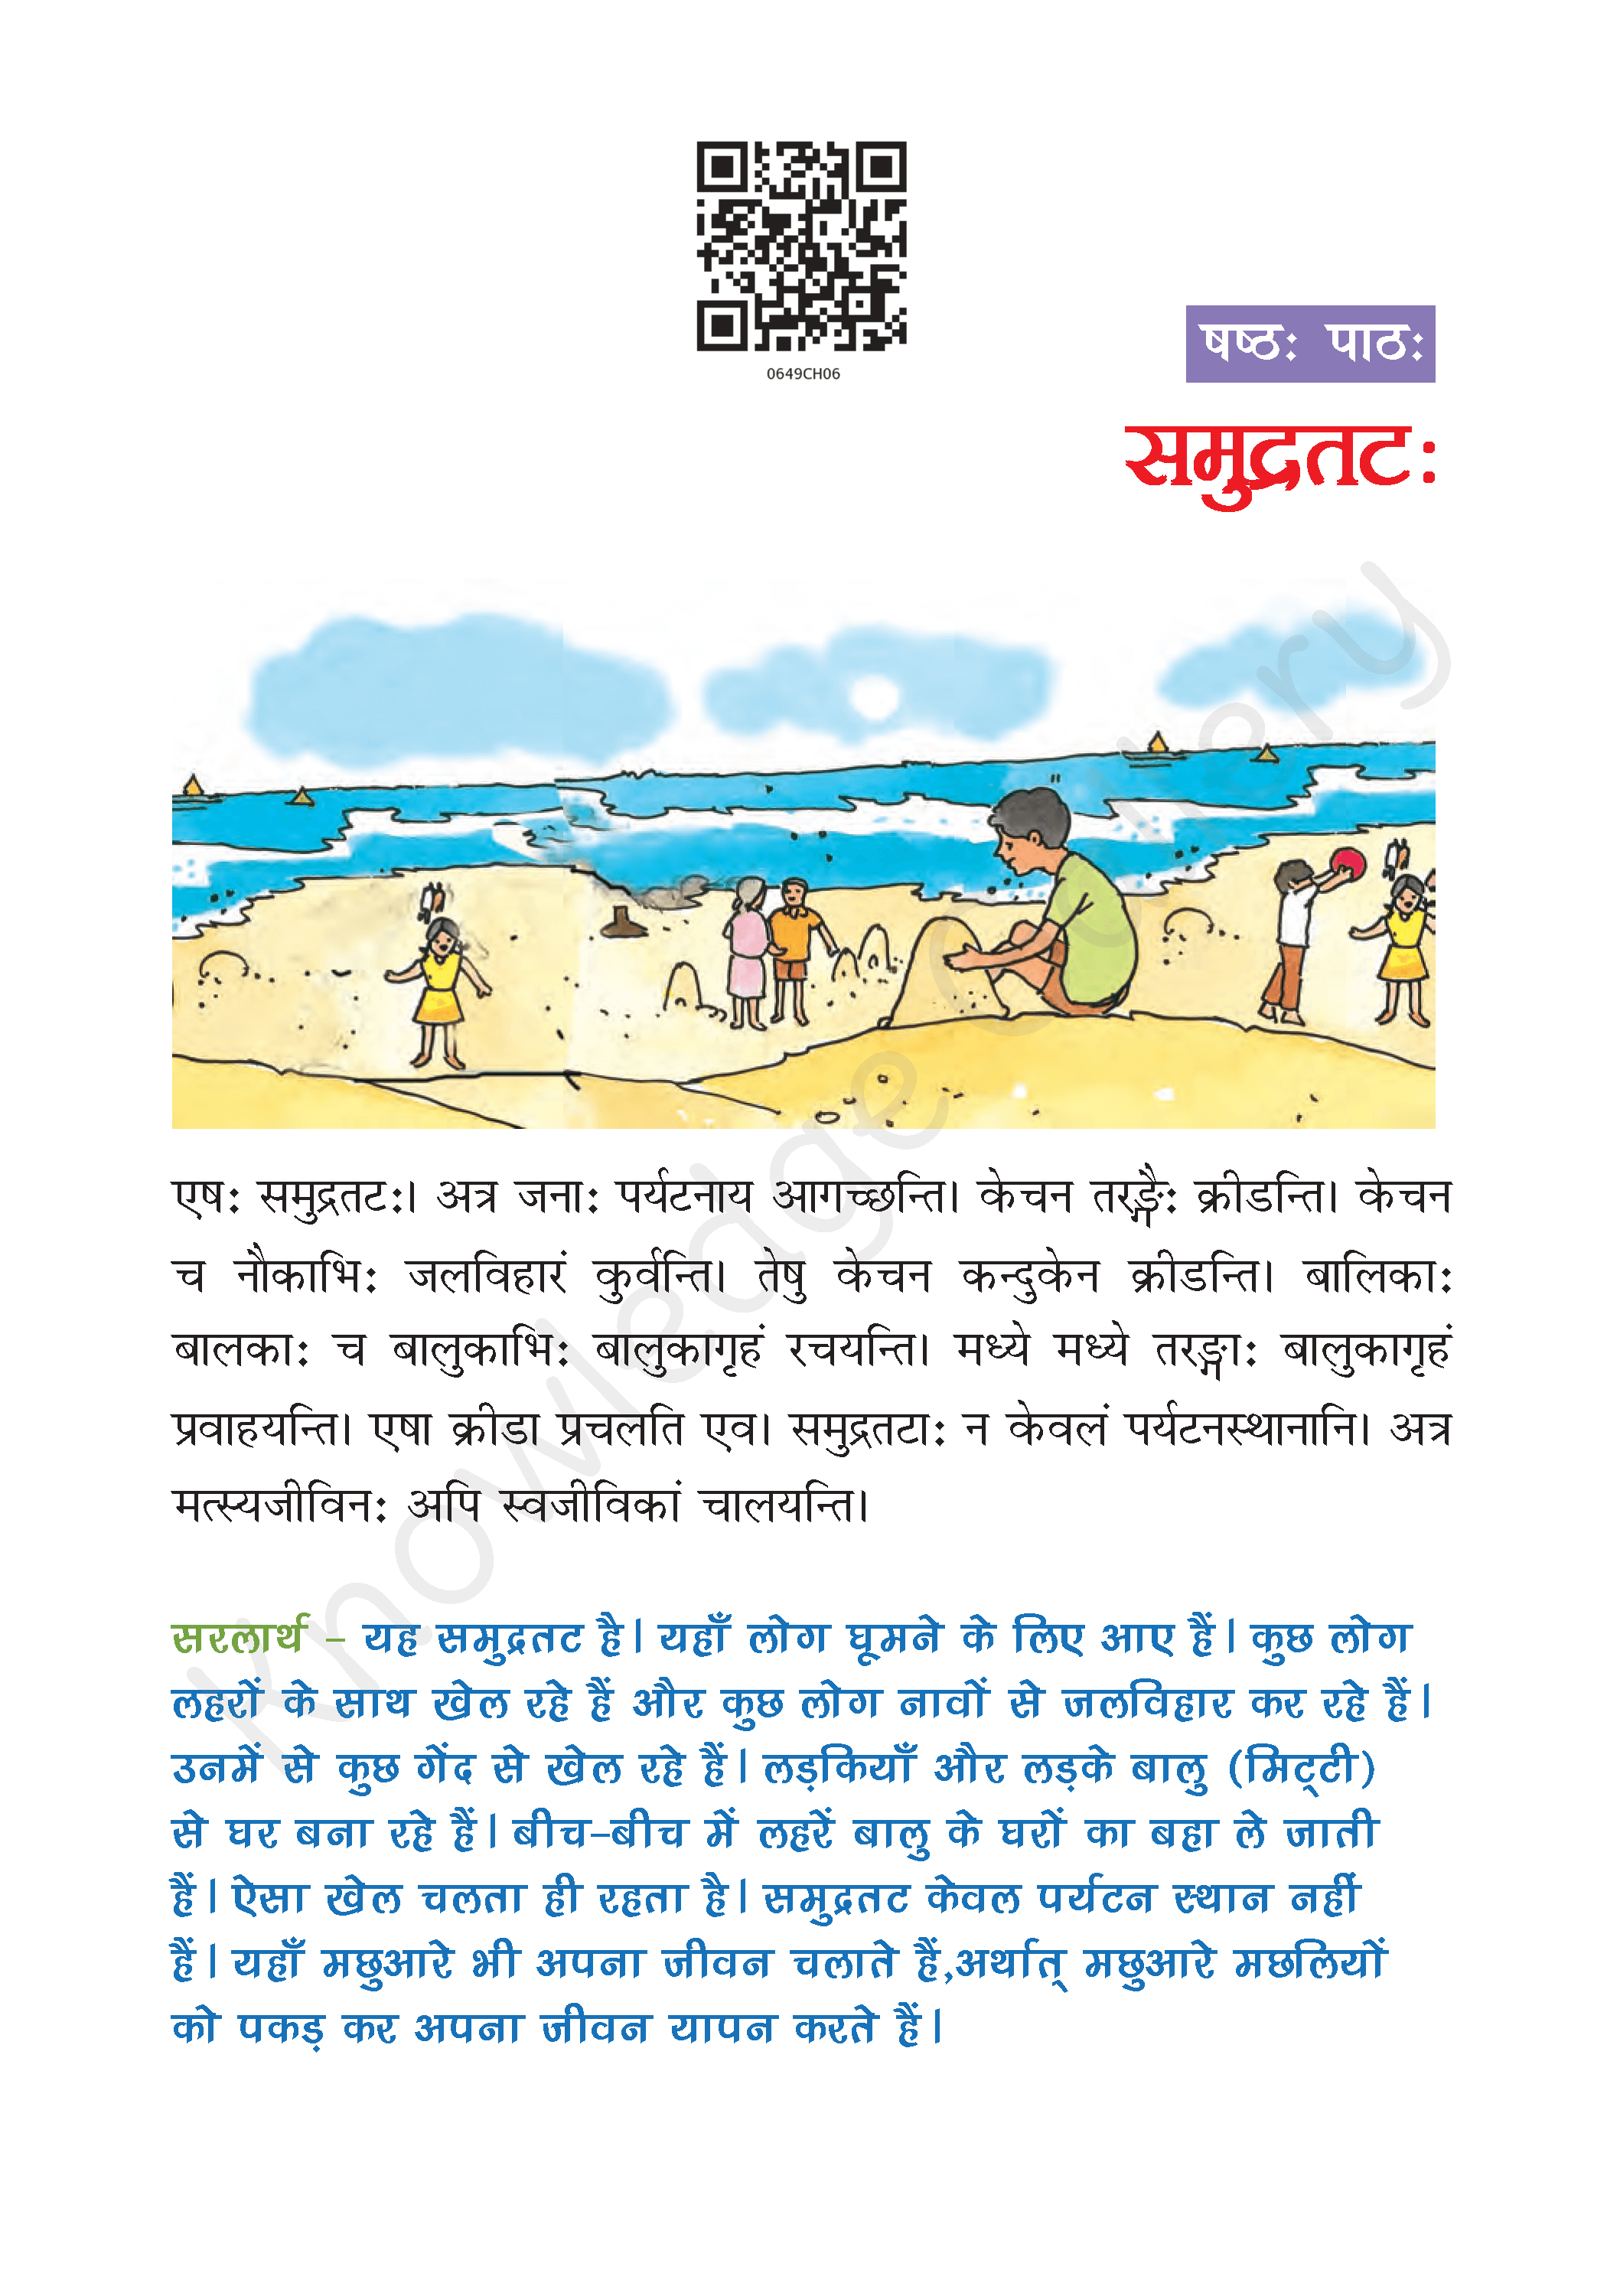 NCERT Solution For Class 6 Sanskrit Chapter 6 part 1